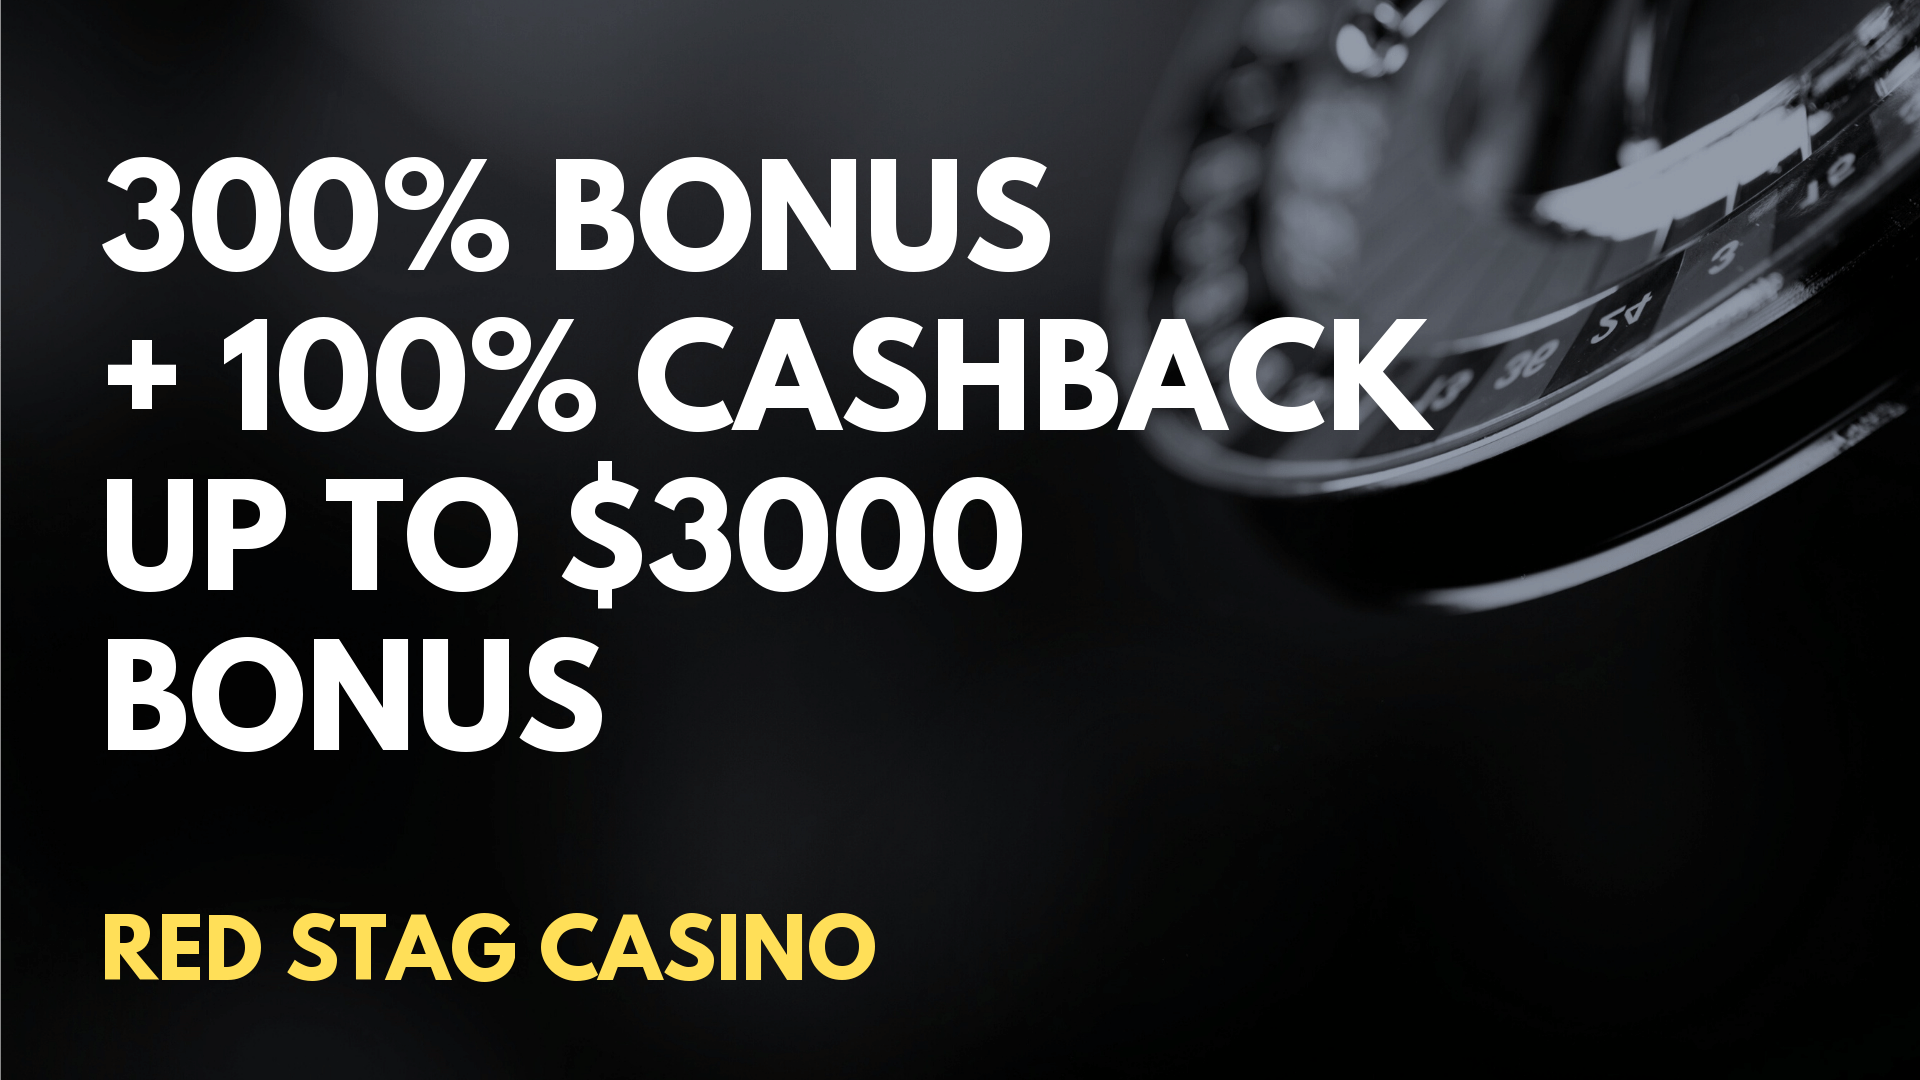 red stag casino no deposit bonus 2020